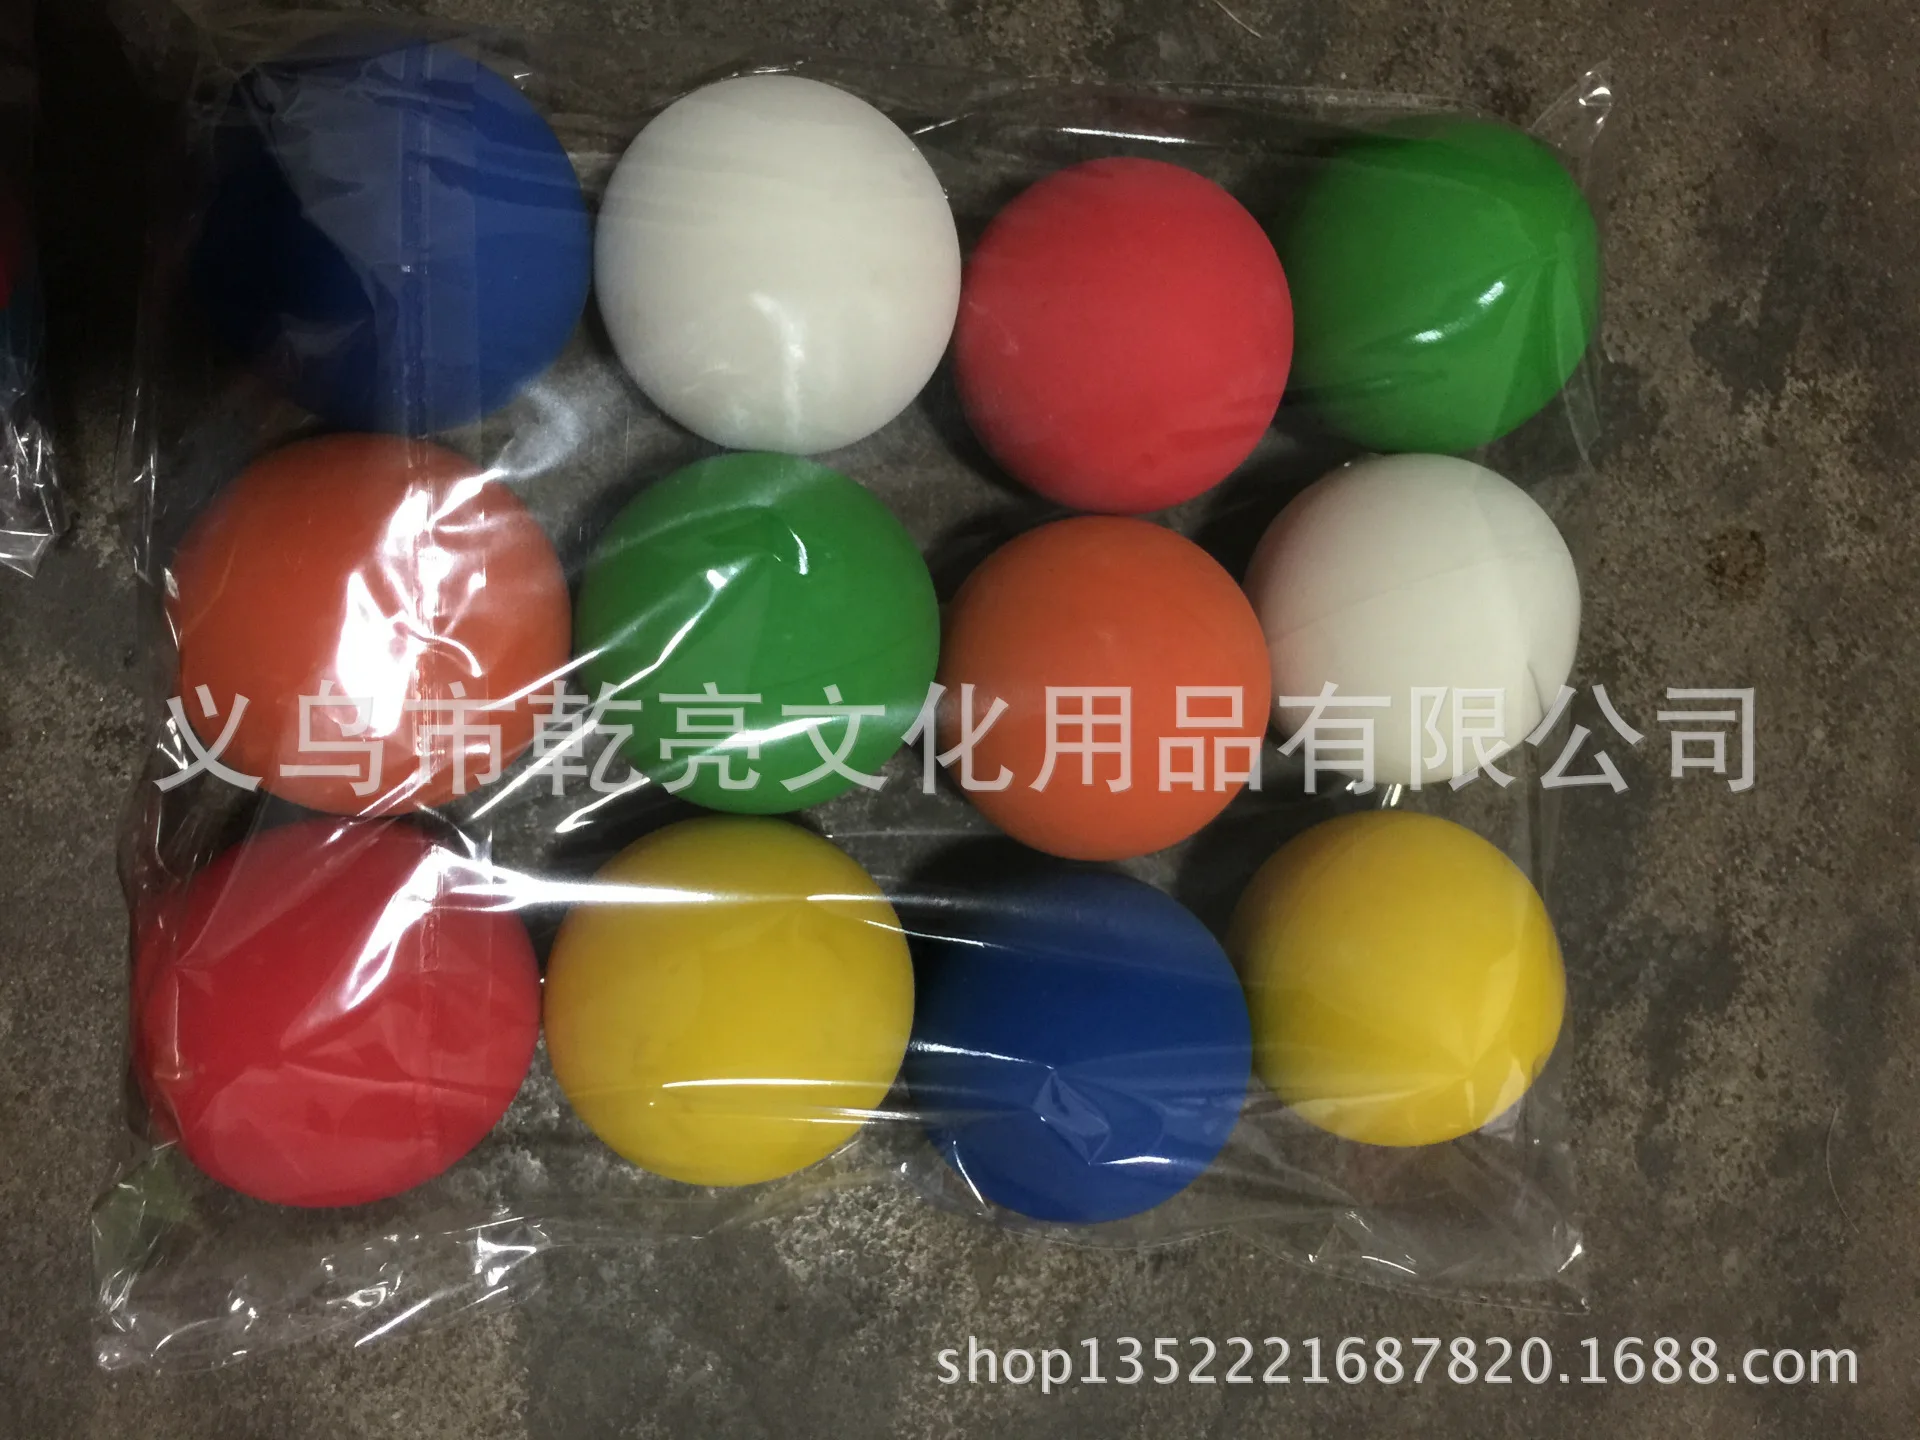 Производители оптовой продажи цветной двойной цвет ультра-стрейч полые резиновые шарики Диаметр 6. 0 см американский стиль Сквош льготный P